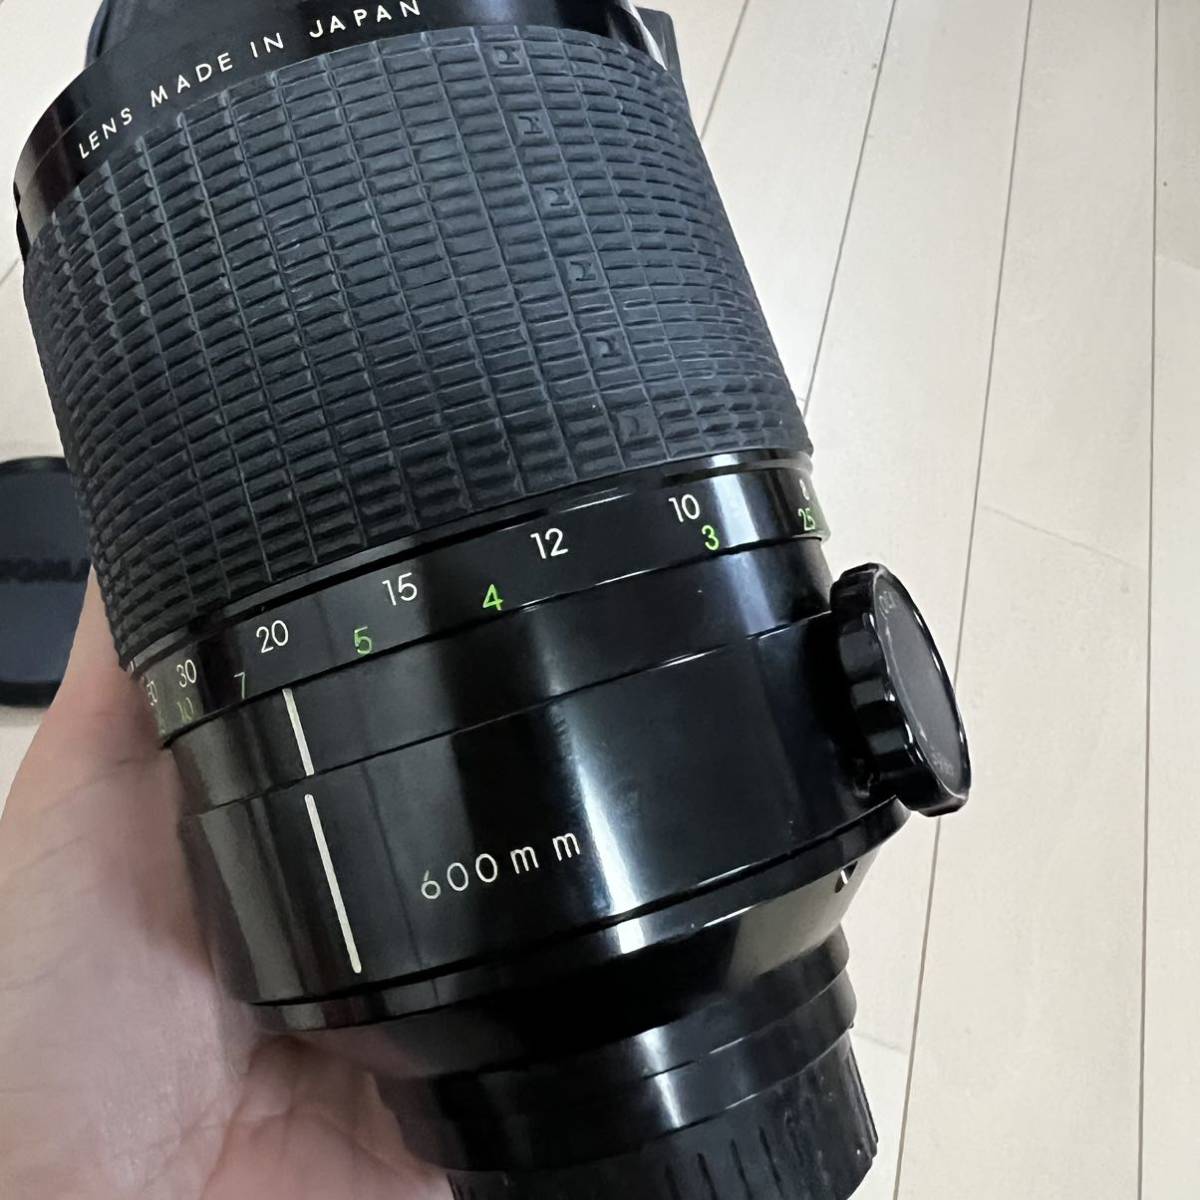 シグマ SIGMA レンズ MIRROR-TELEPHOTO MULTI-COATED 1:8 f=600mm 専用ケース付き カメラ キャップ付_画像6